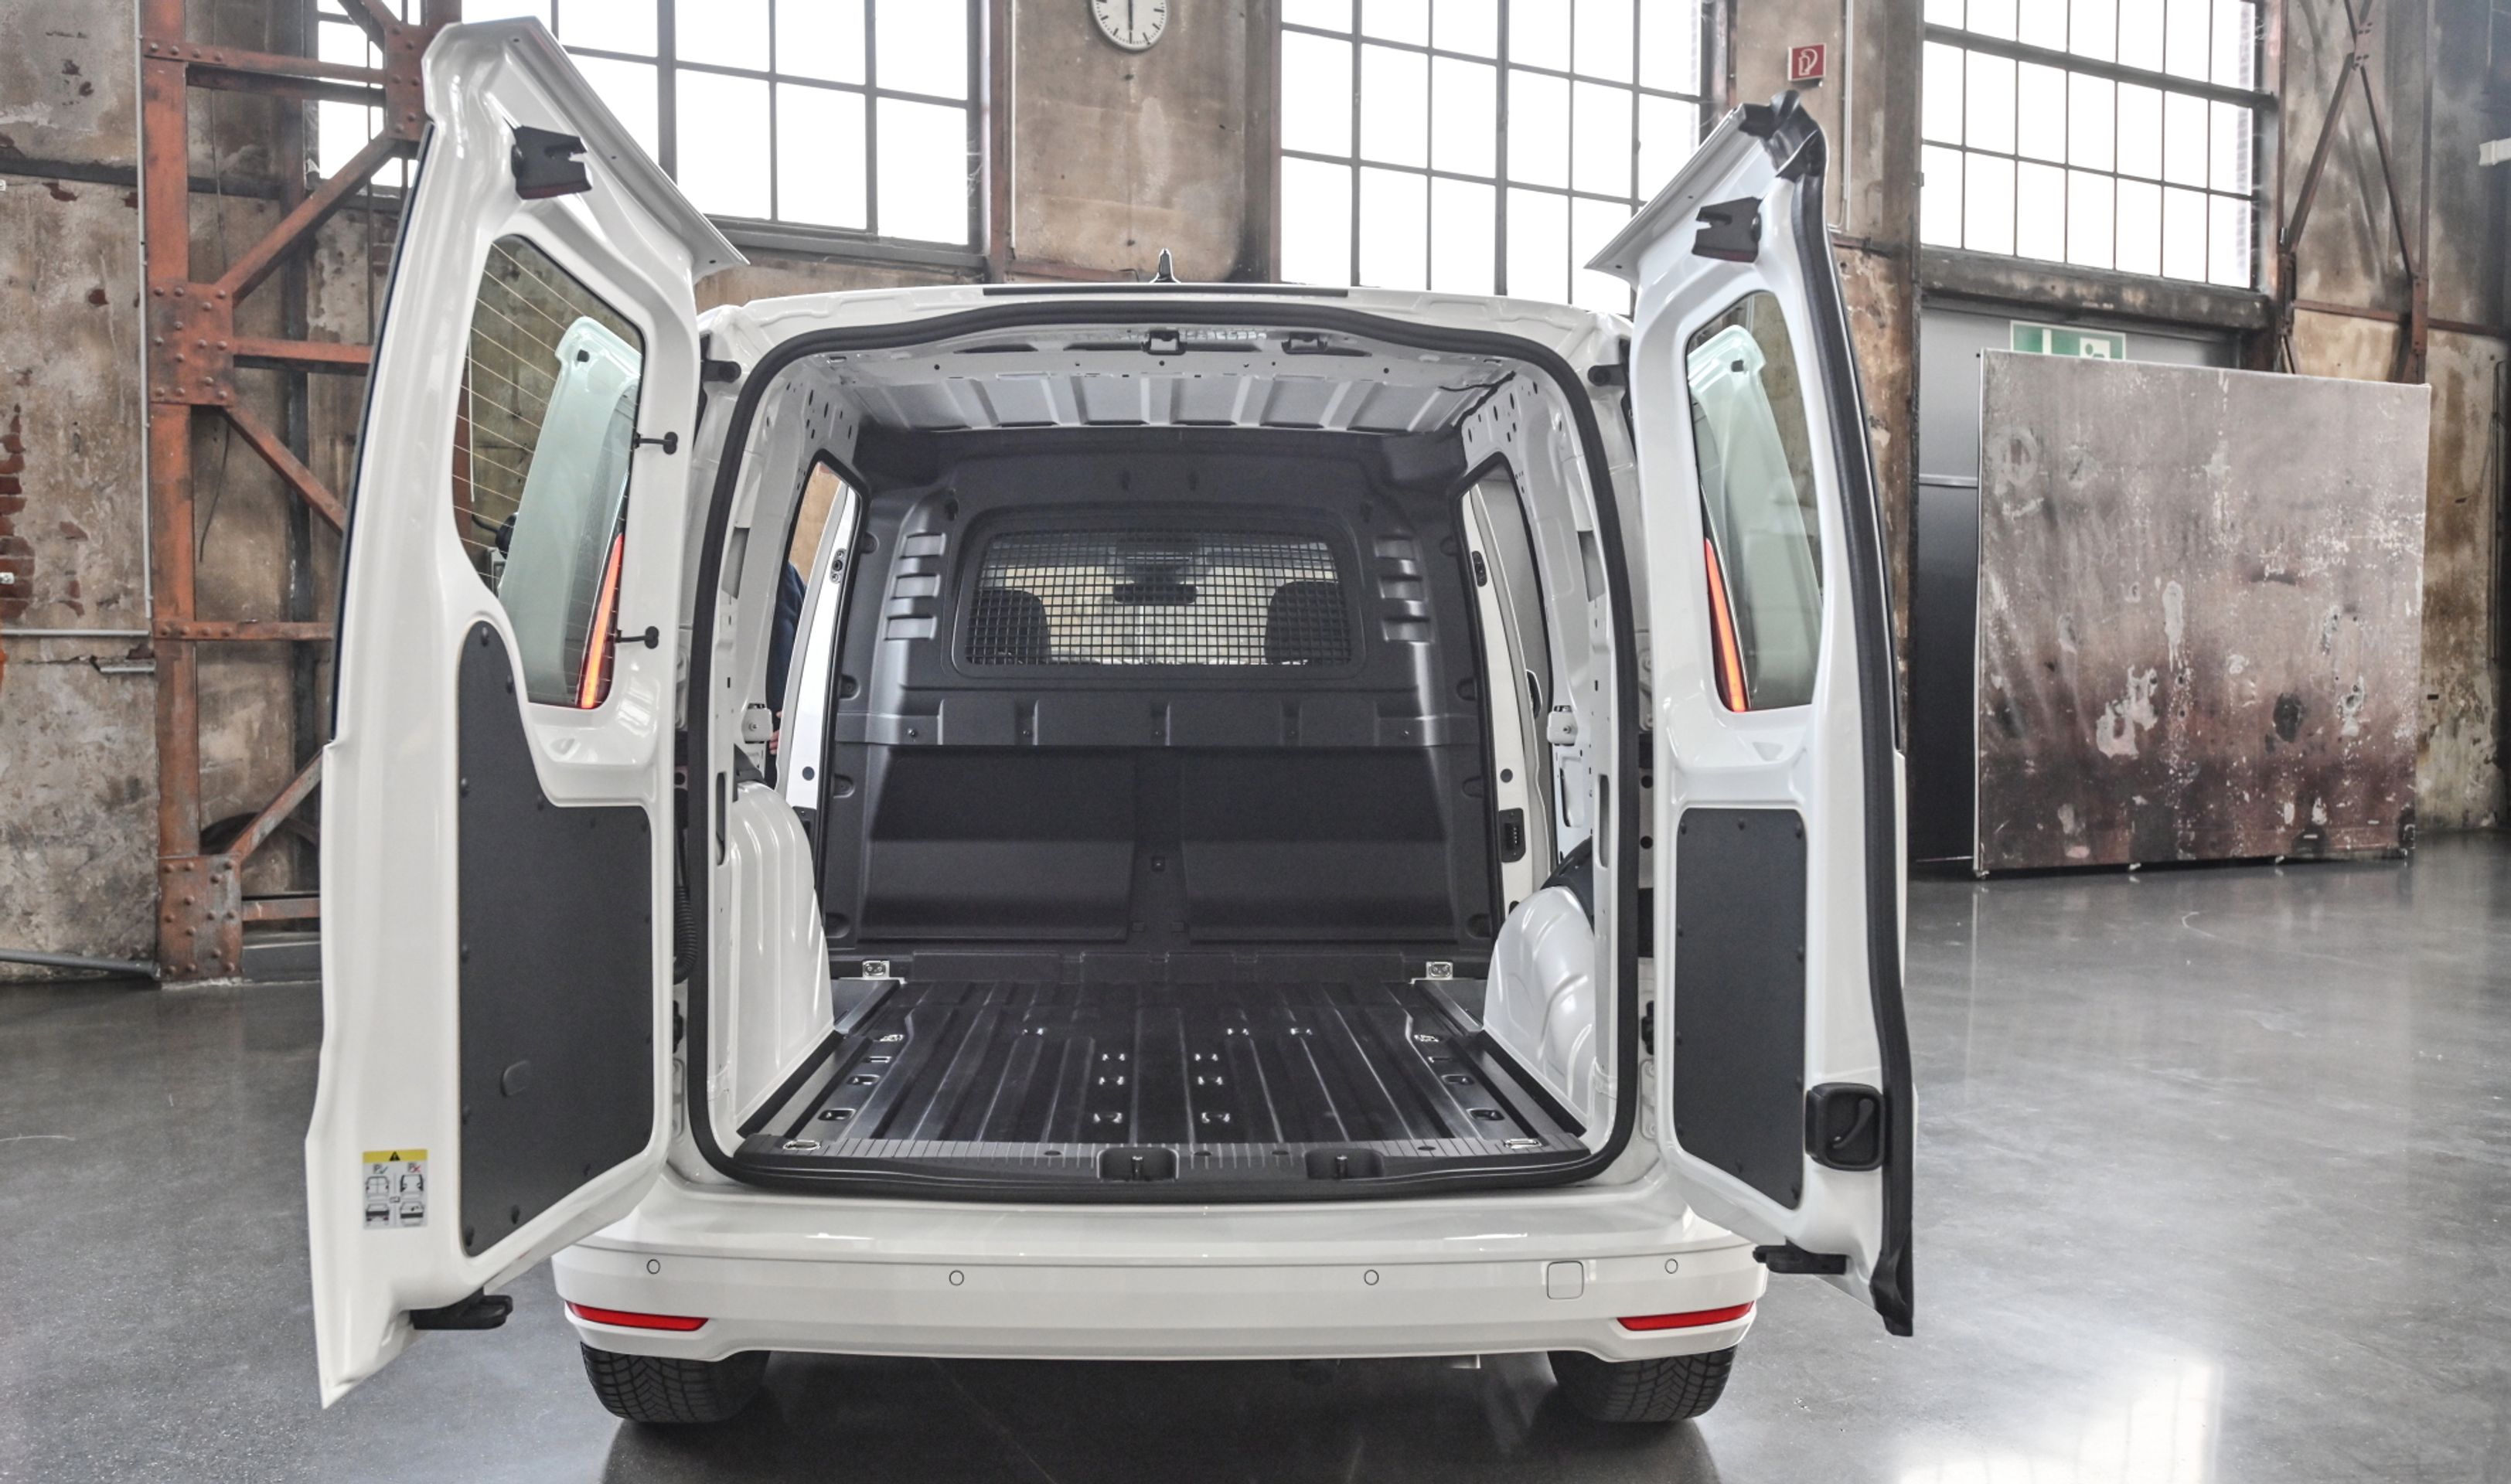 Volkswagen Caddy Cargo - 5 - Fotogalerie: Nový Caddy jako dříč, obytňák i auto pro rodinu (43/43)